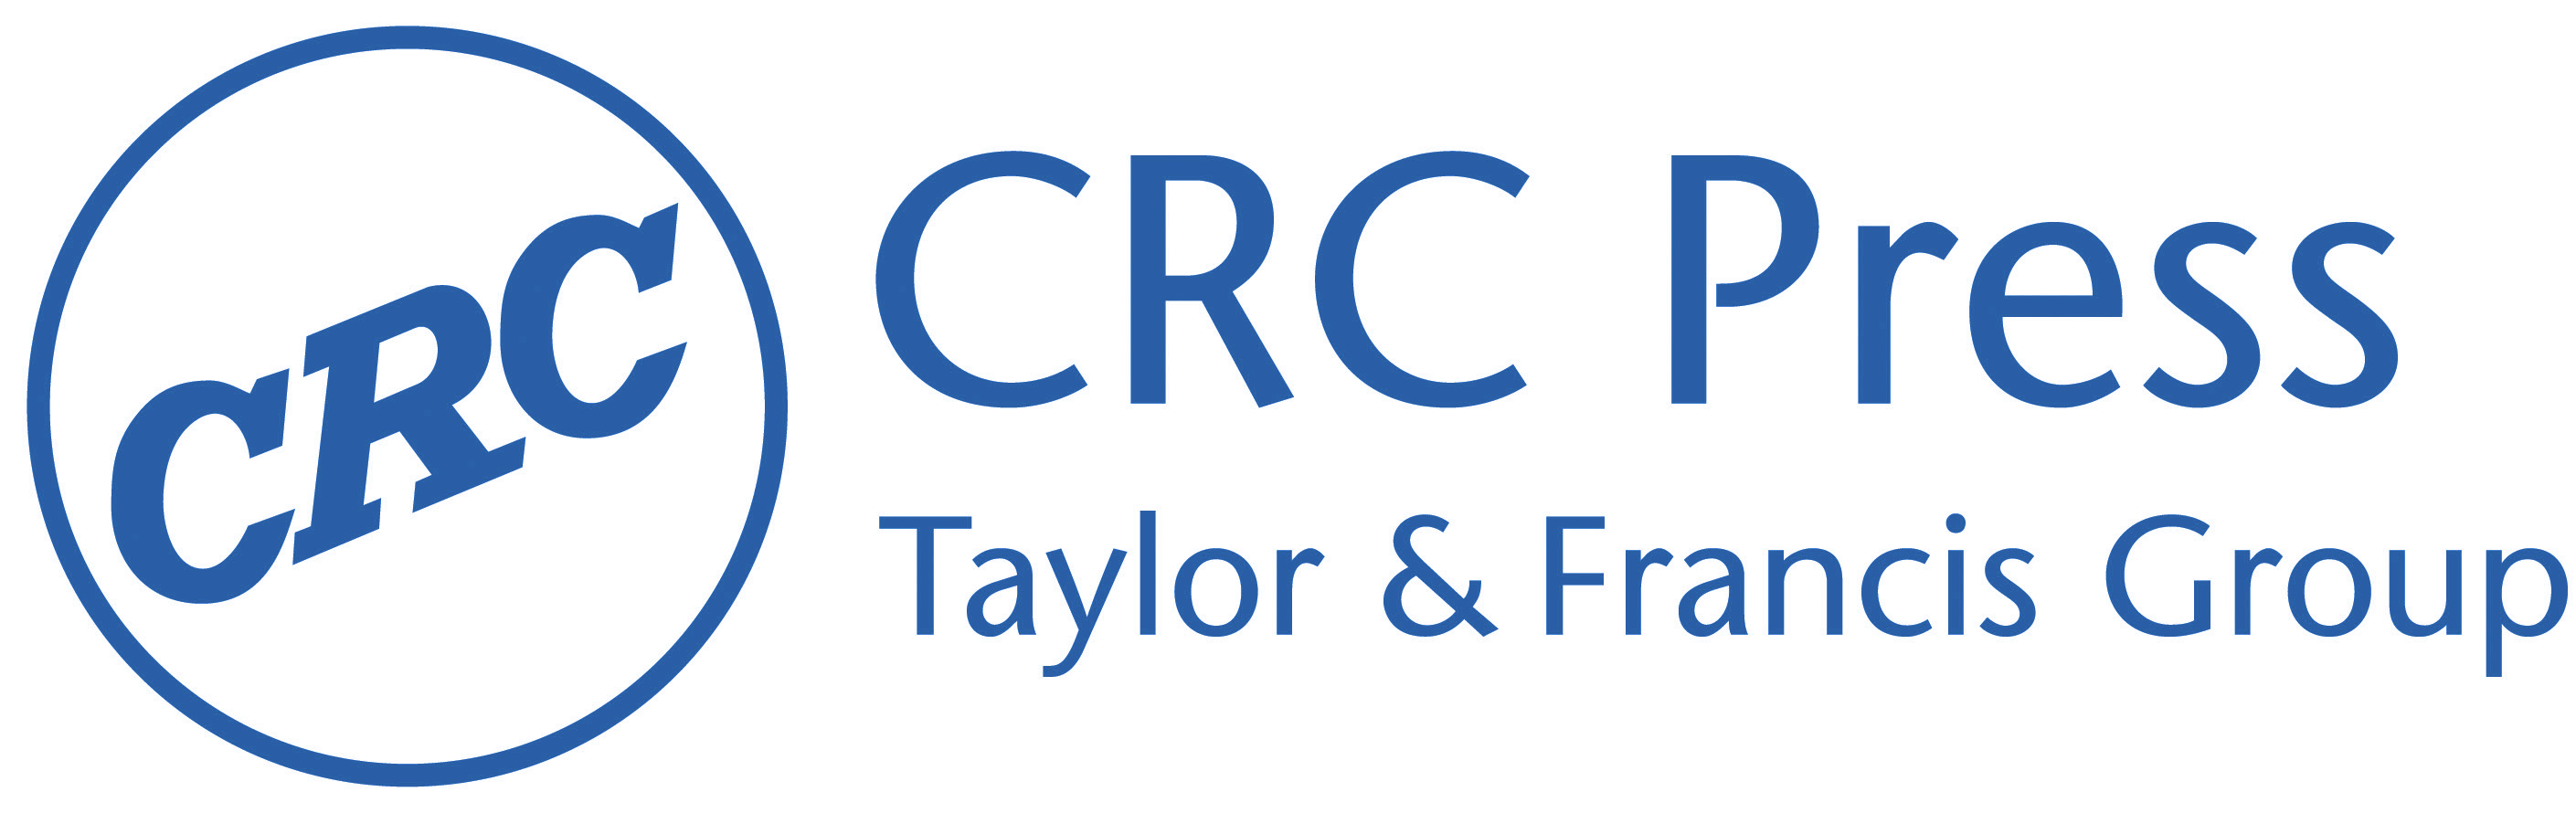 CRC PRESS - Taylor & Francis Group